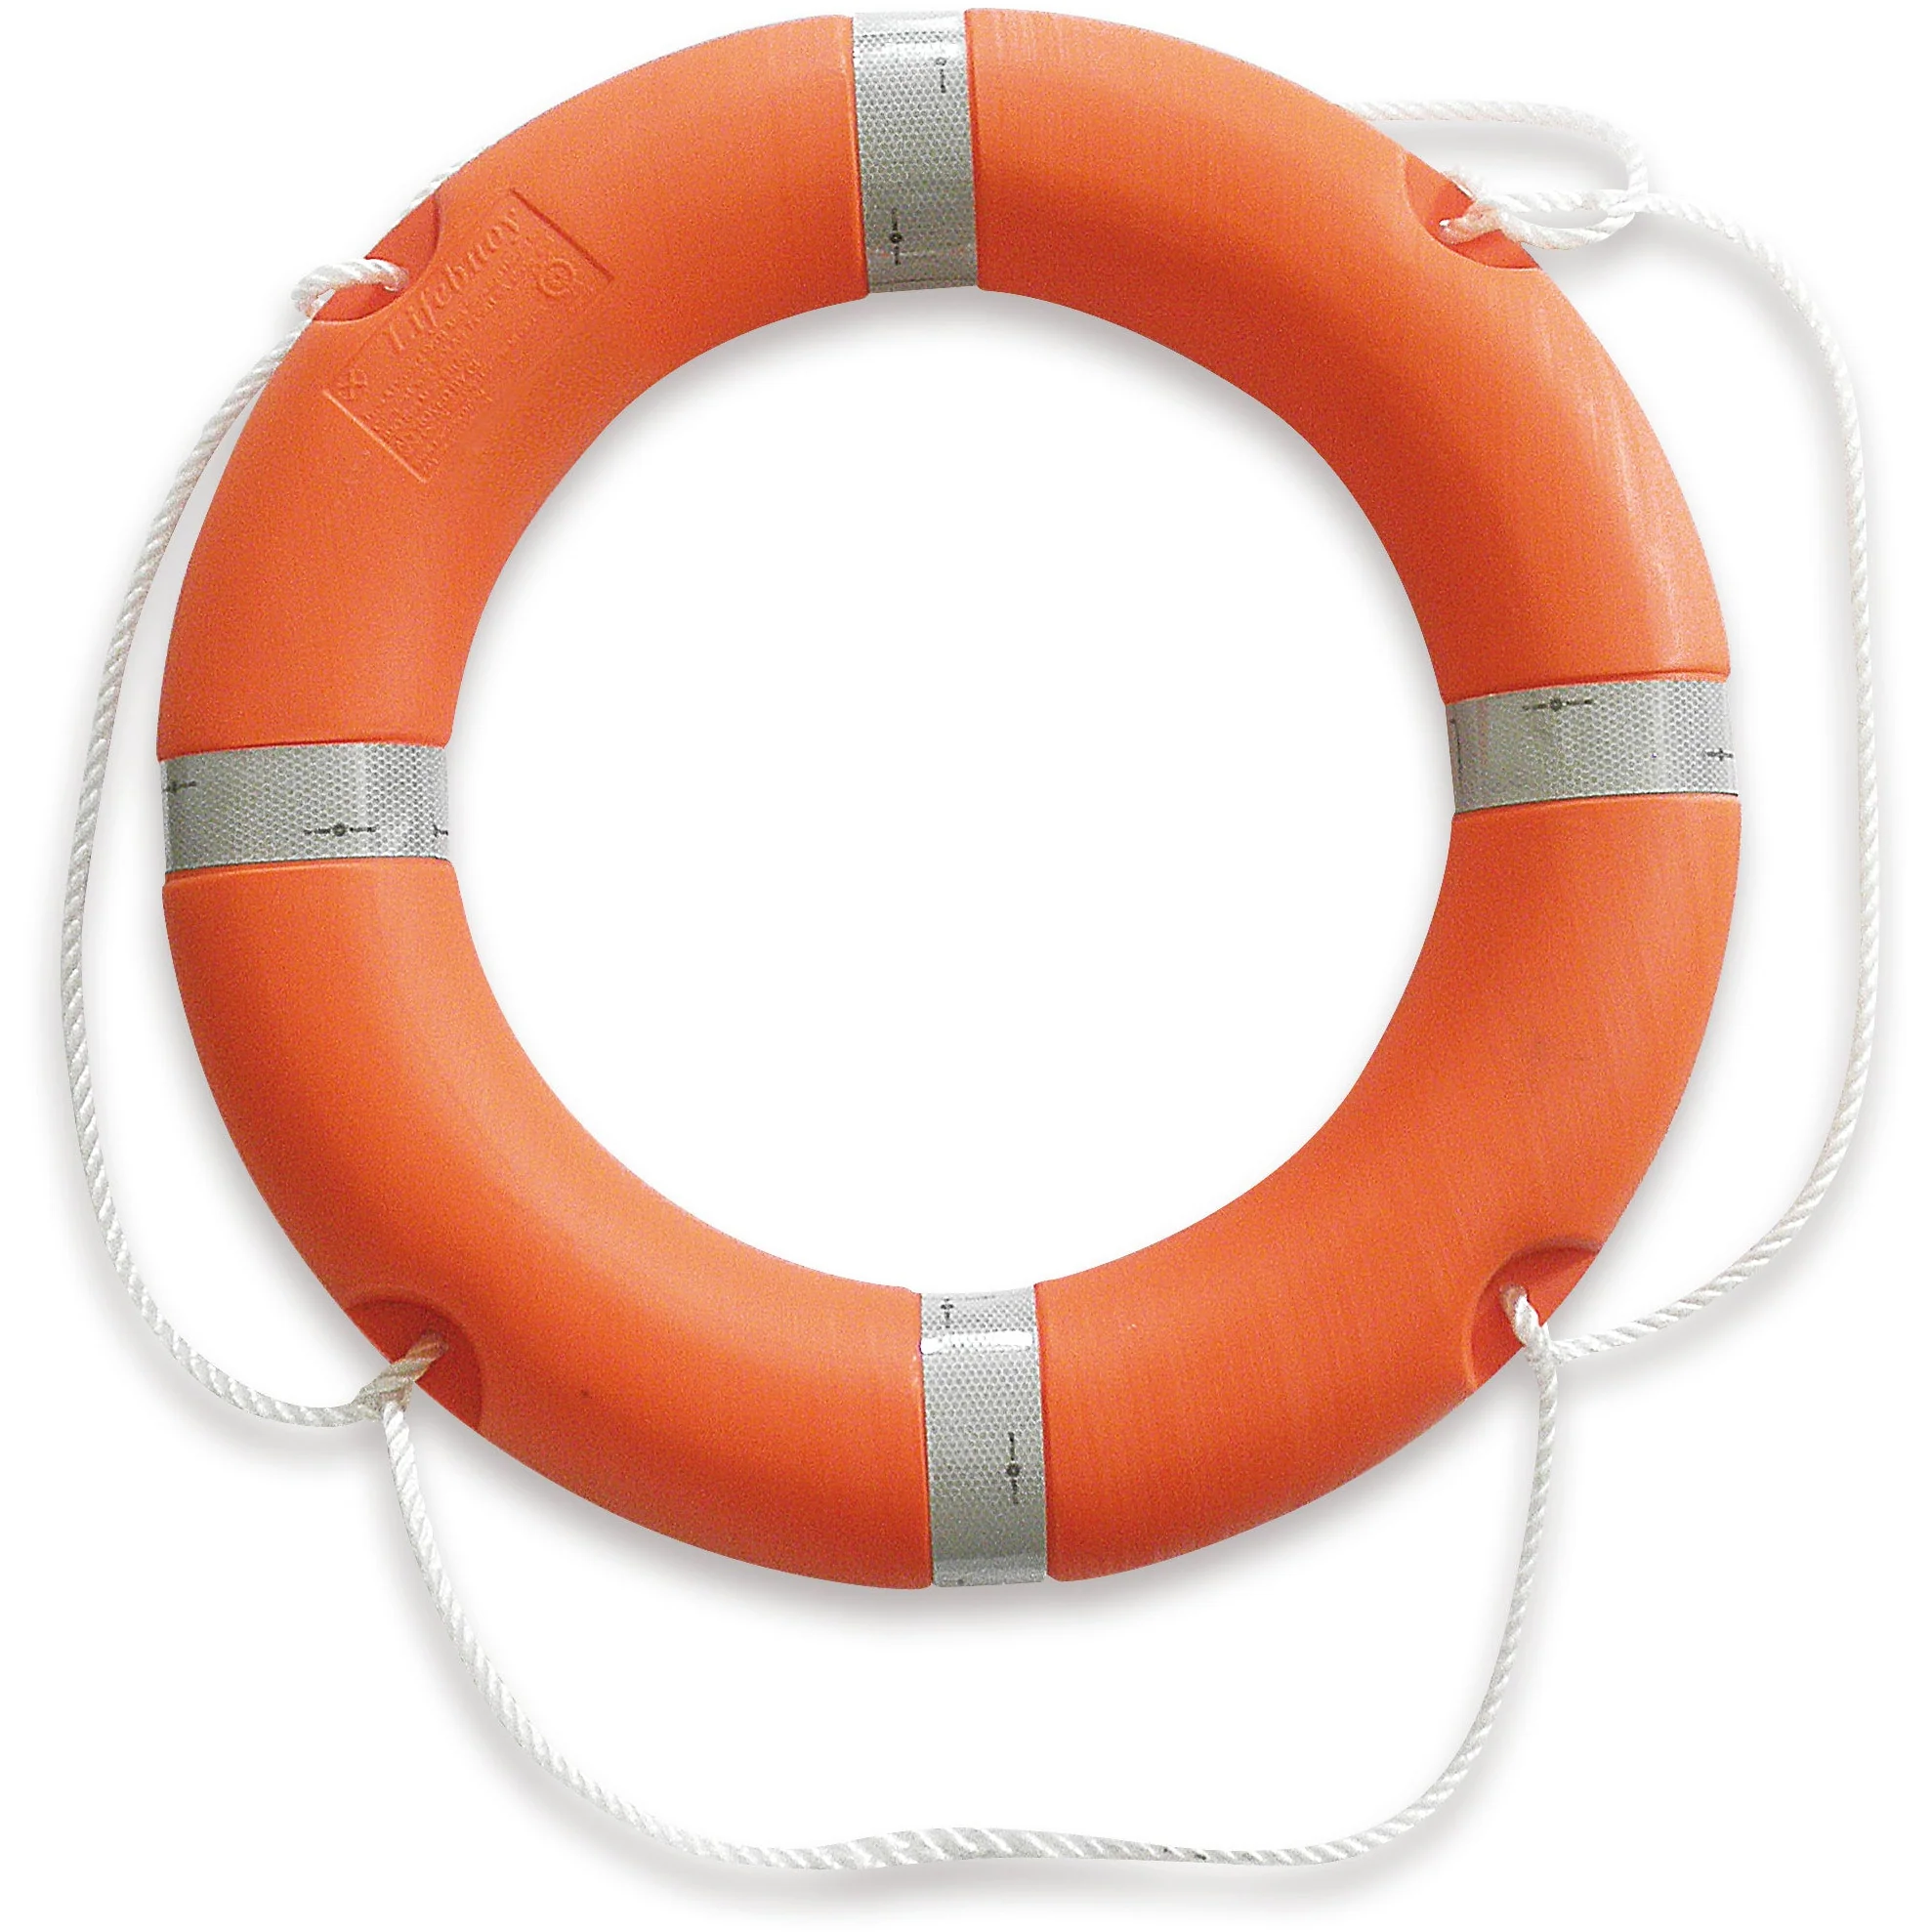 Rettungsring für Personenschifffahrt